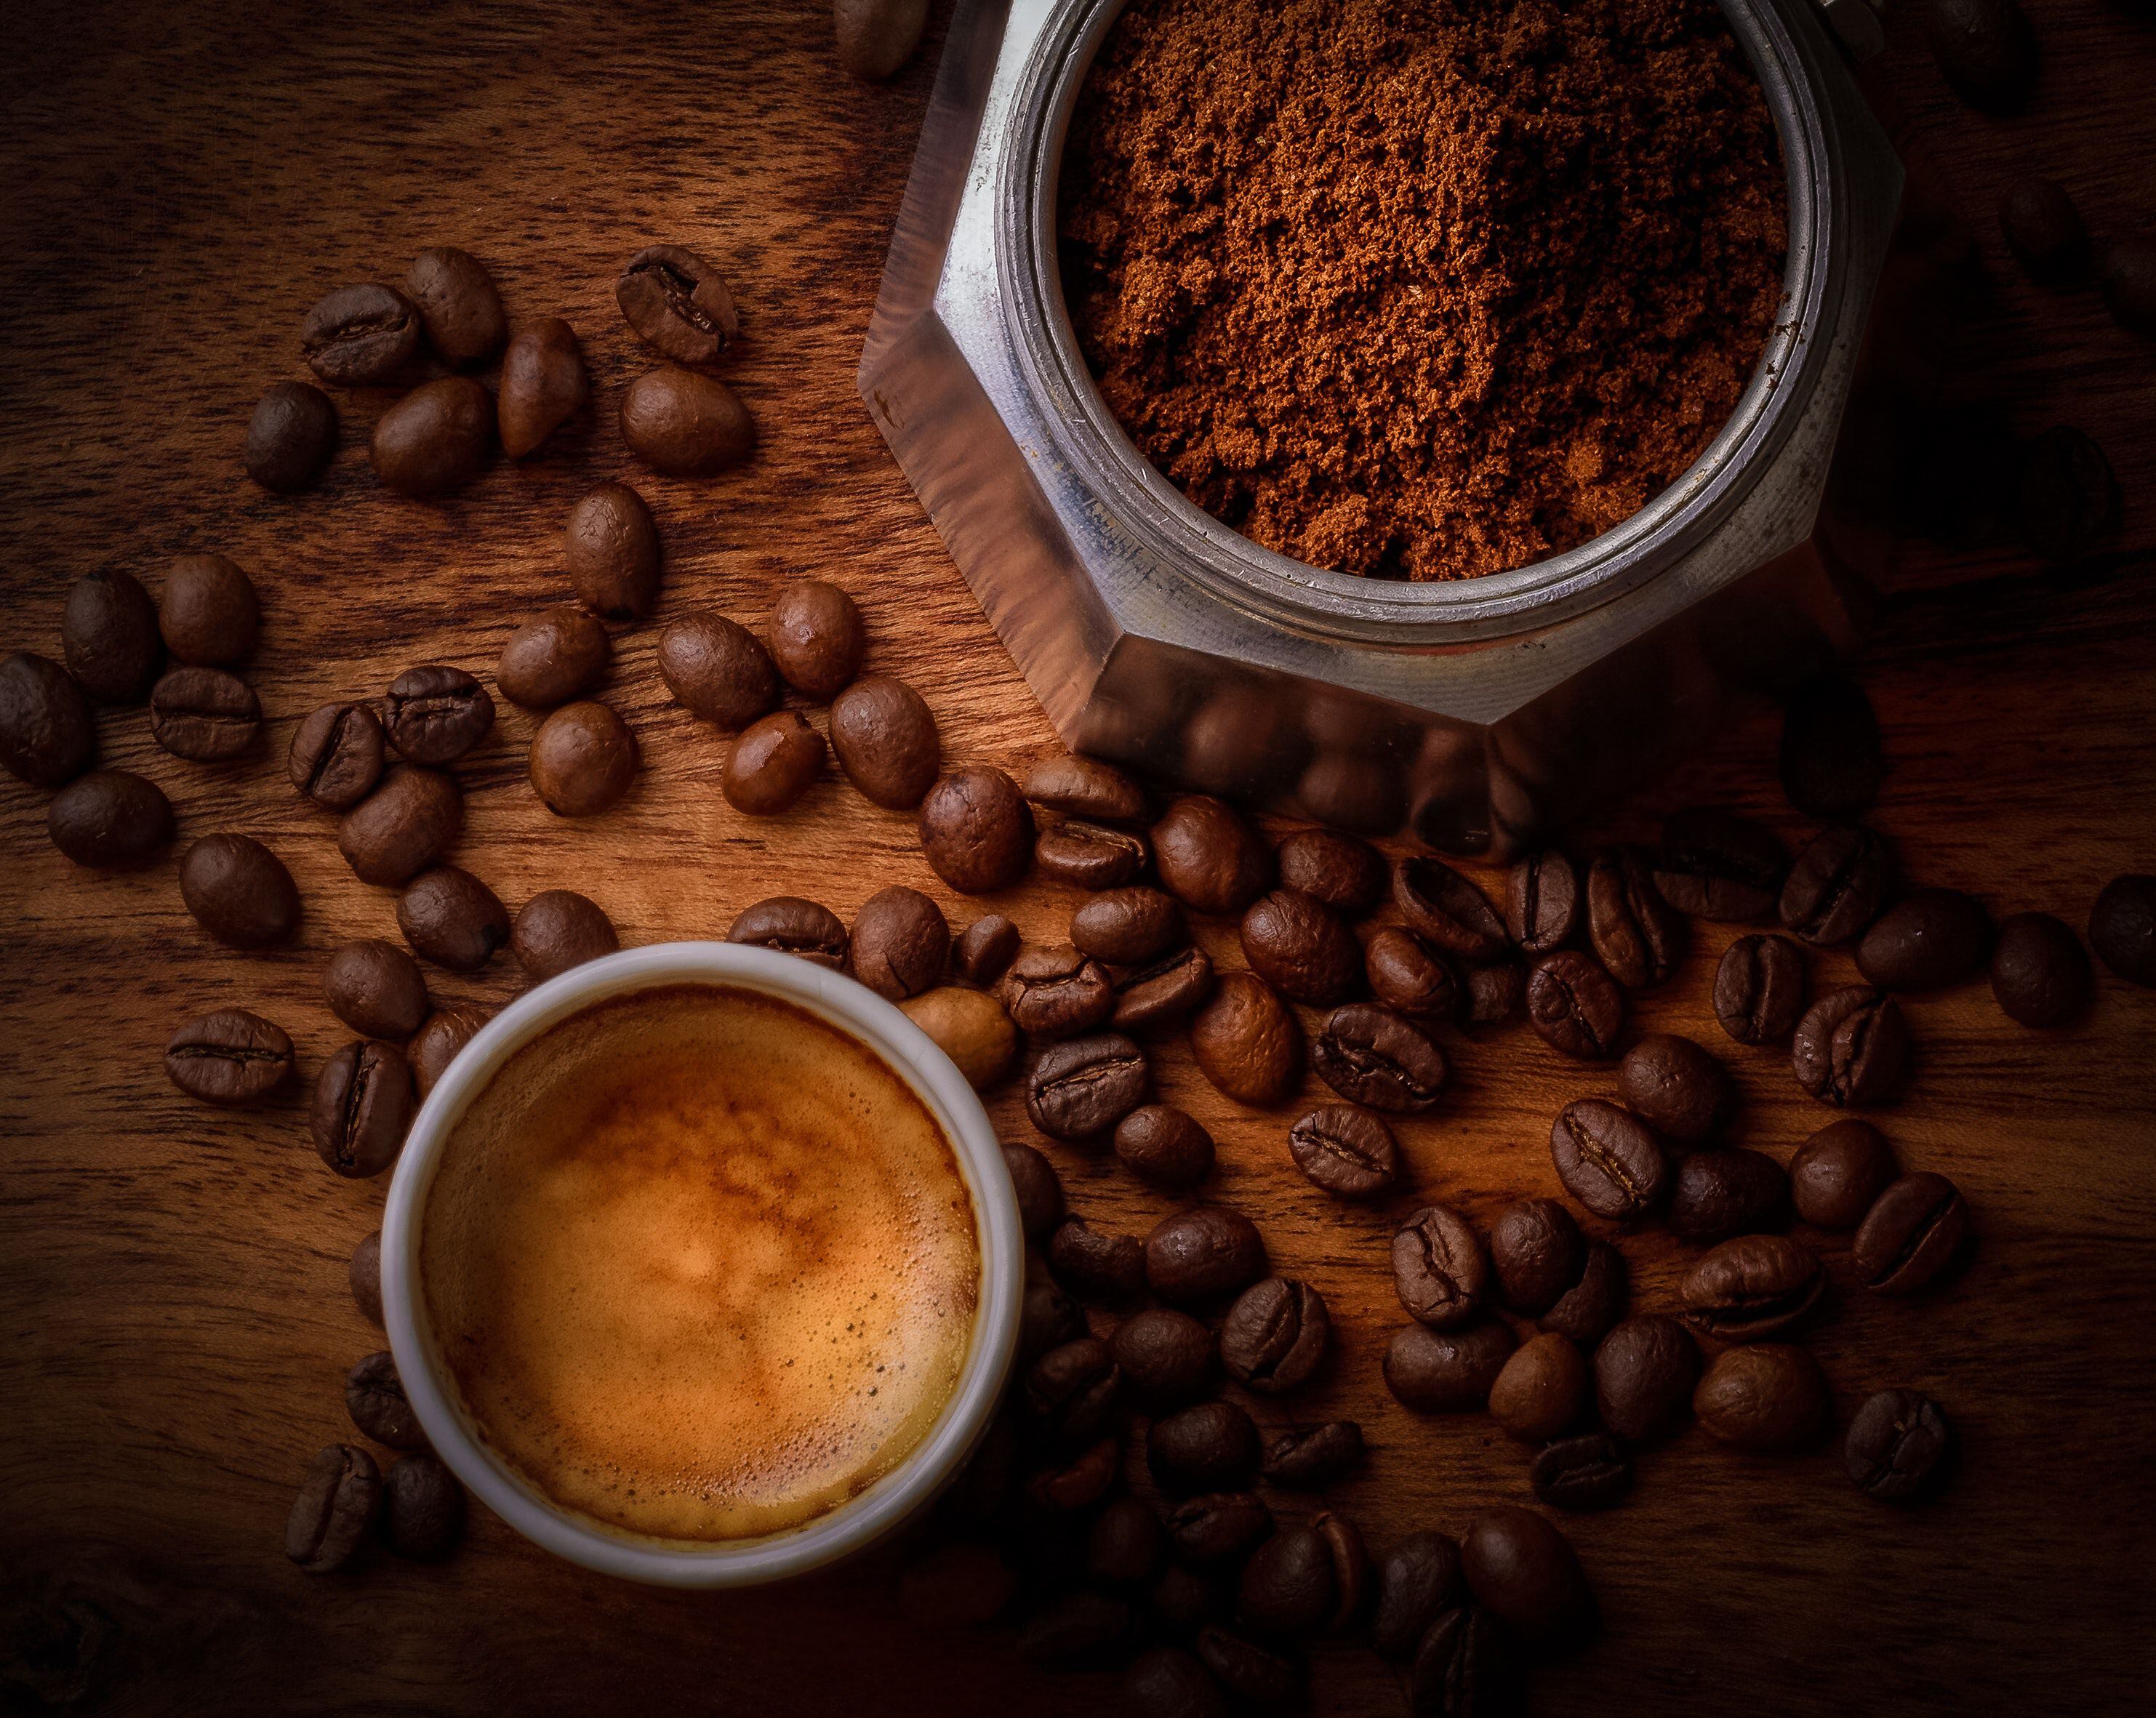 Aparte de disfrutarlo como bebida, el café tiene muchos usos tanto en grano entero como los desechos. 